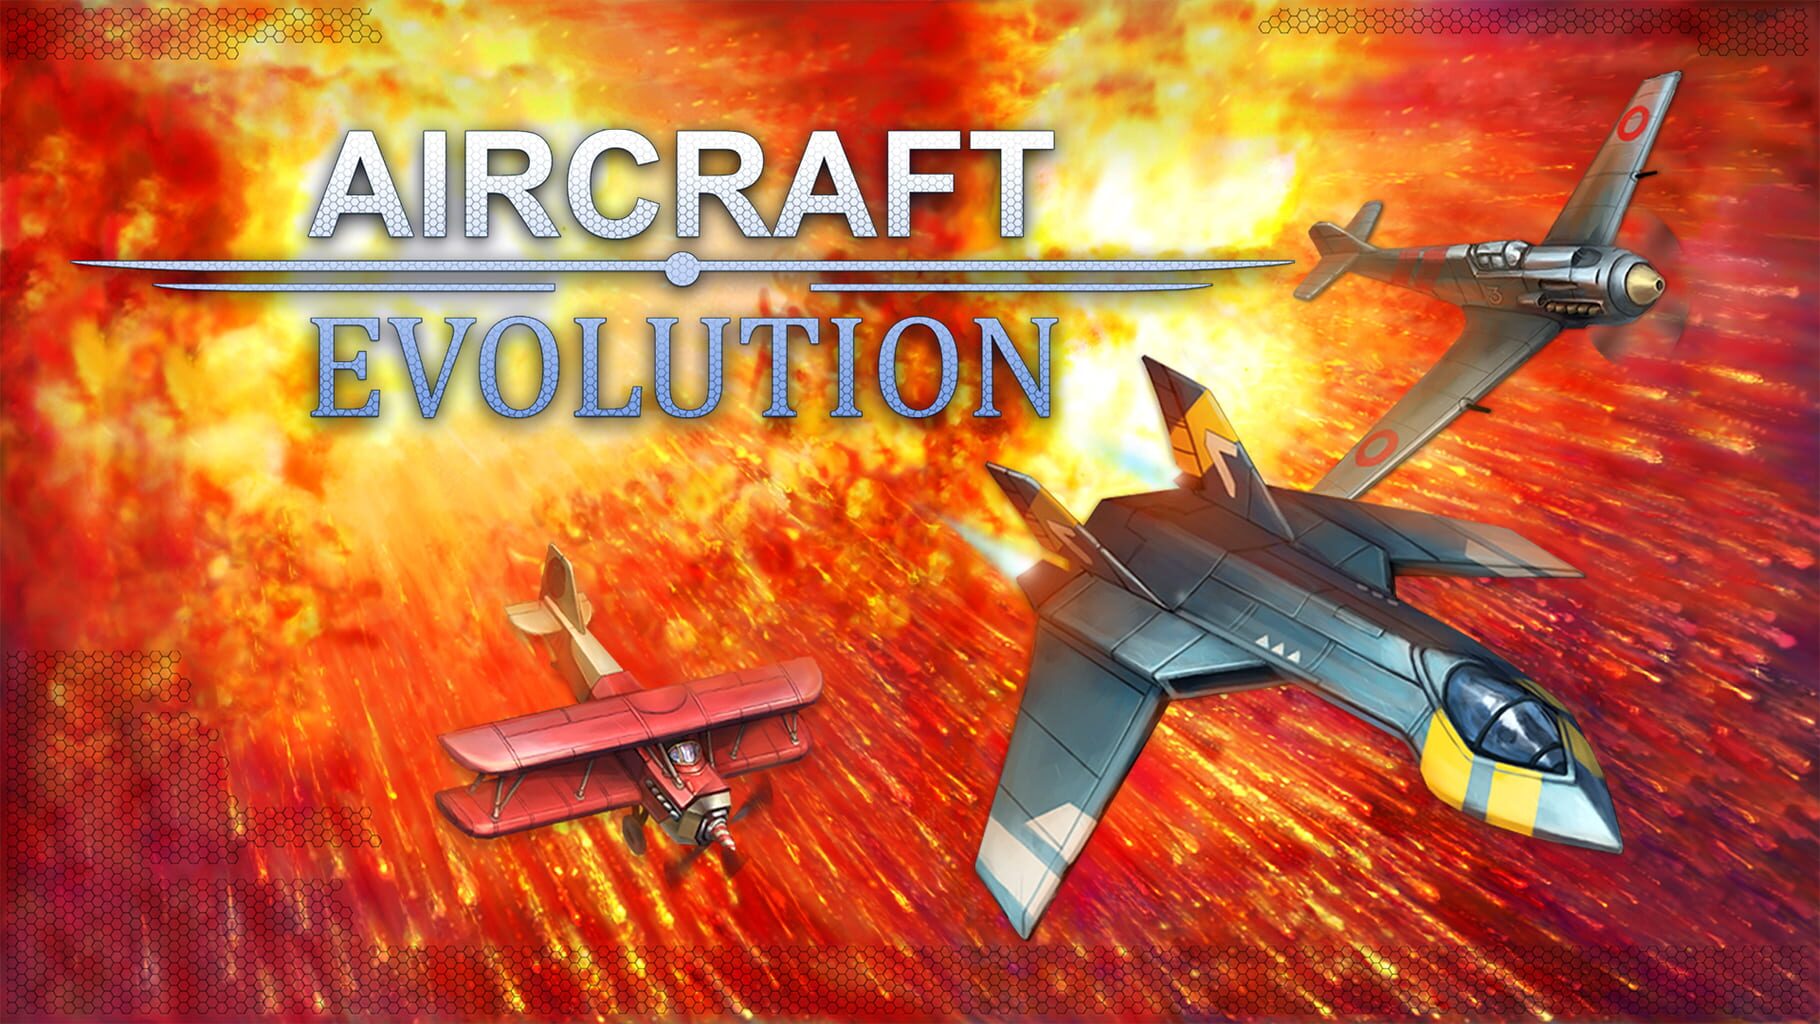 Aircraft Evolution artwork